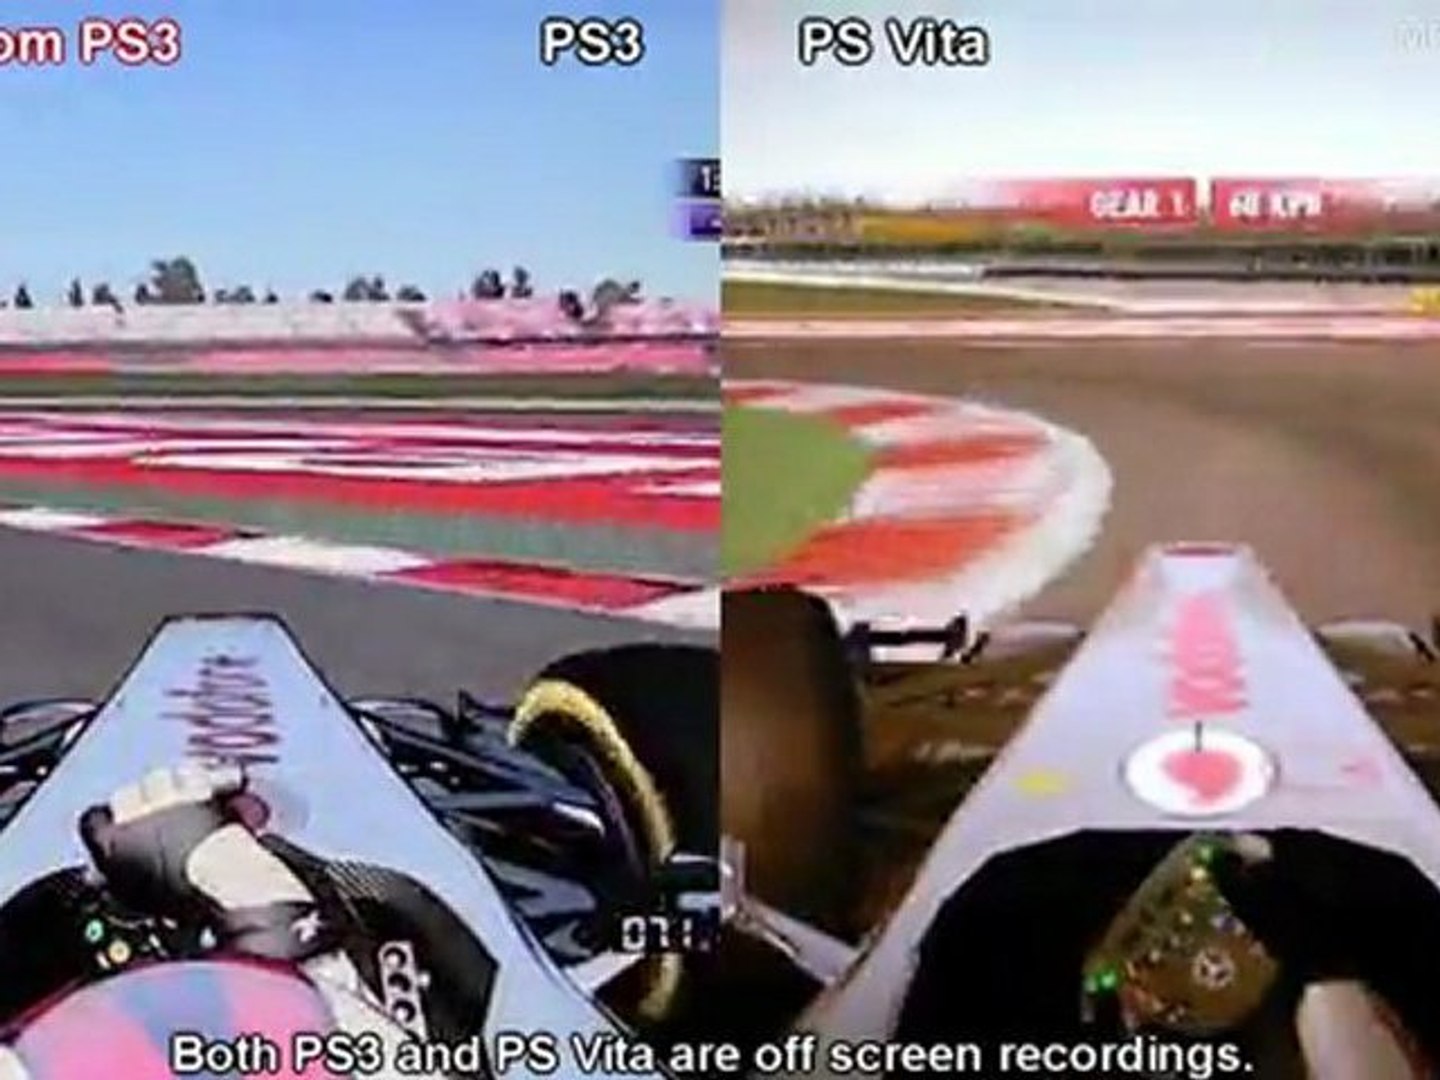 F1 2011 - PS3 vs PS Vita - Graphics Comparison - video Dailymotion